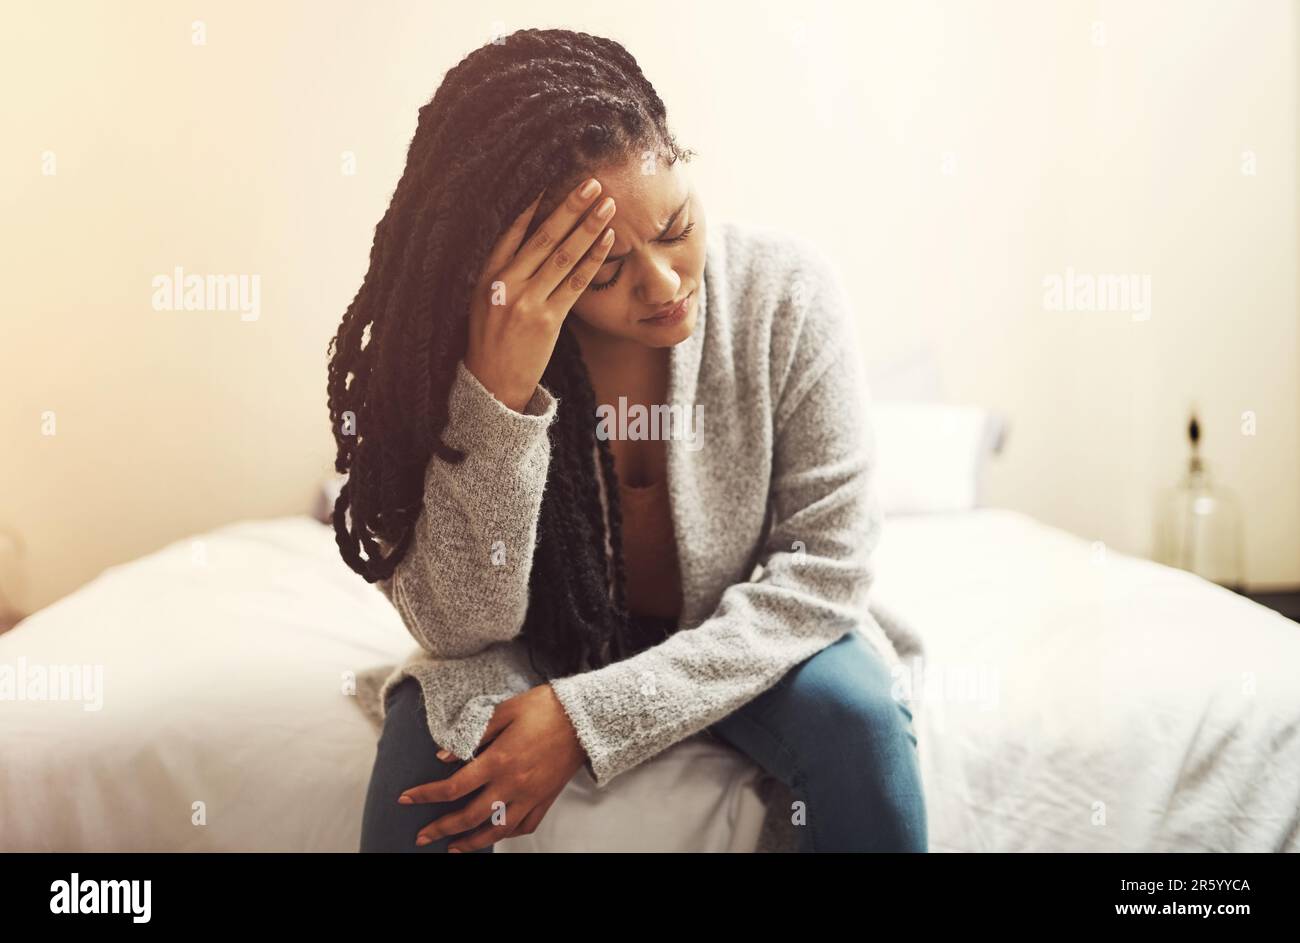 Je suis tellement fatigué de me sentir ainsi. une jeune femme qui a l'air dépressive assis sur son lit. Banque D'Images